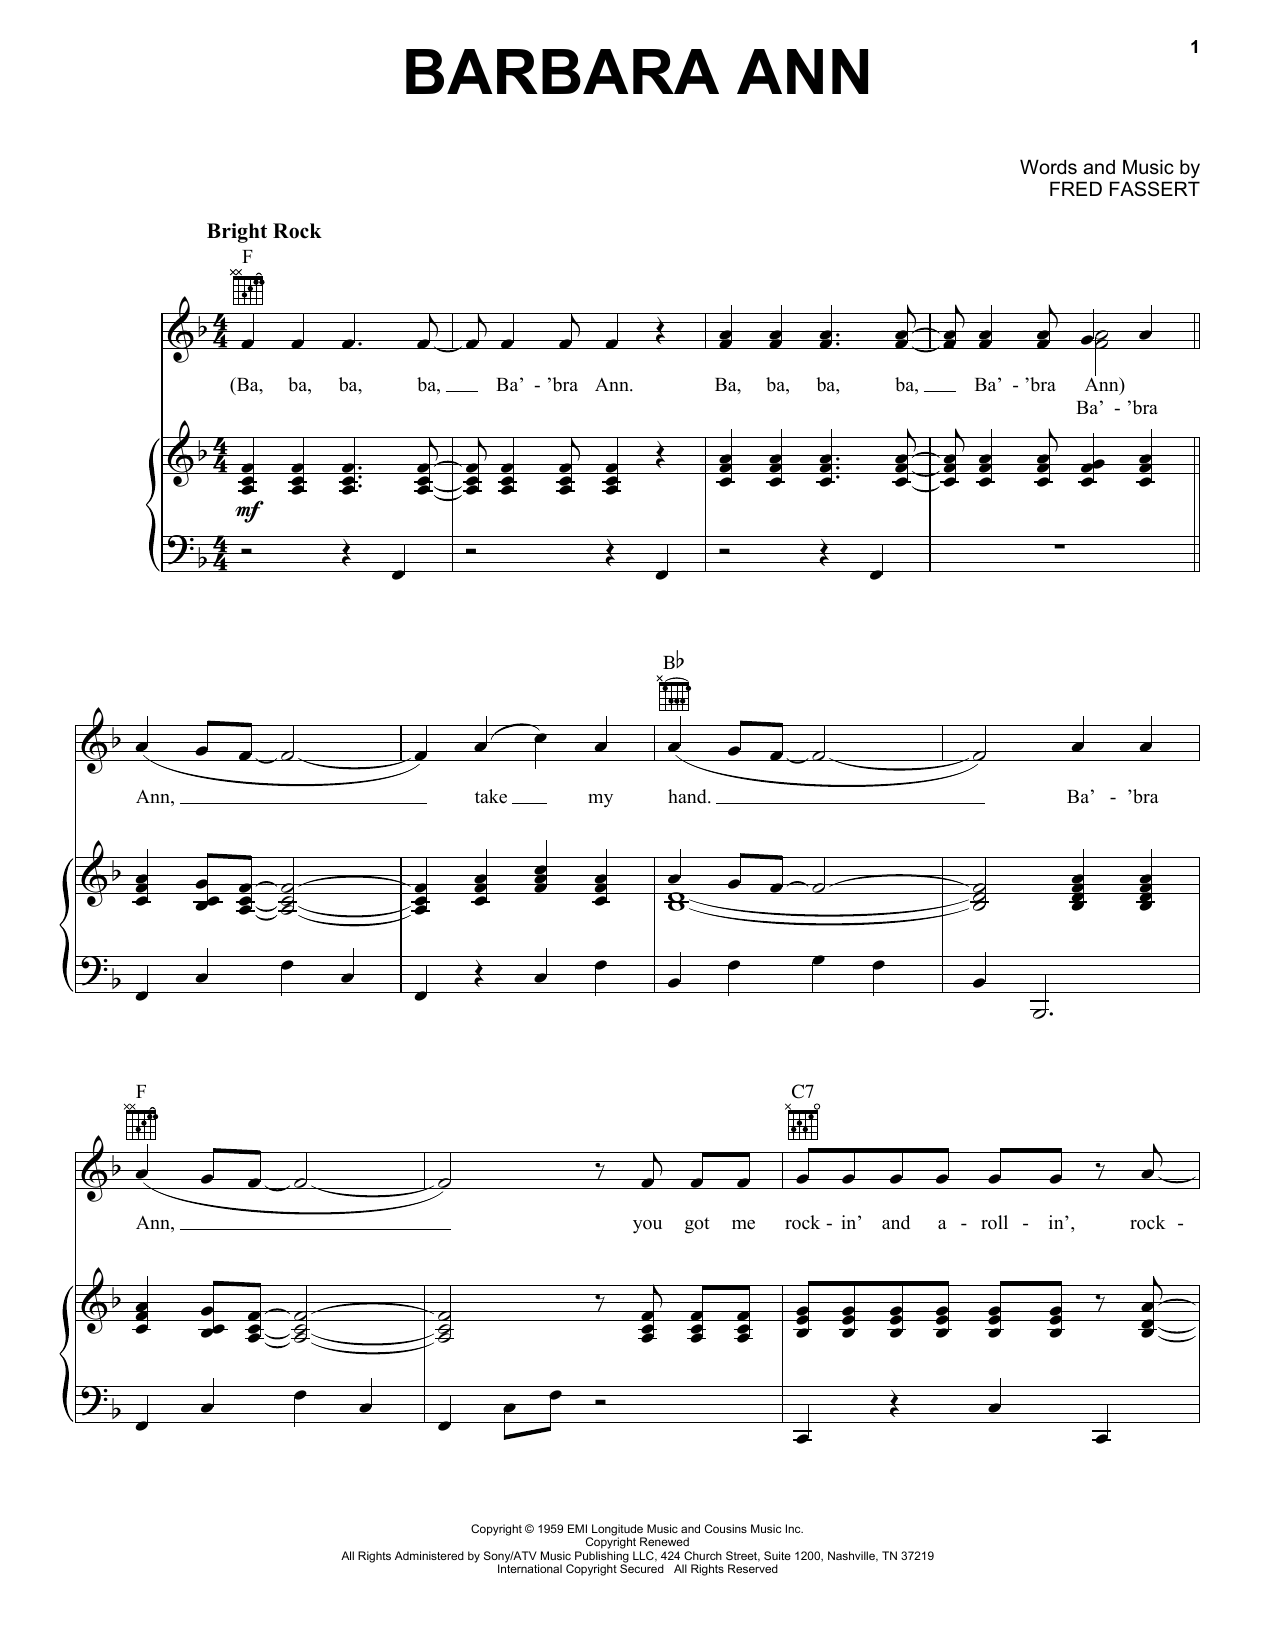 The Beach Boys Barbara Ann sheet music notes and chords arranged for Lead Sheet / Fake Book